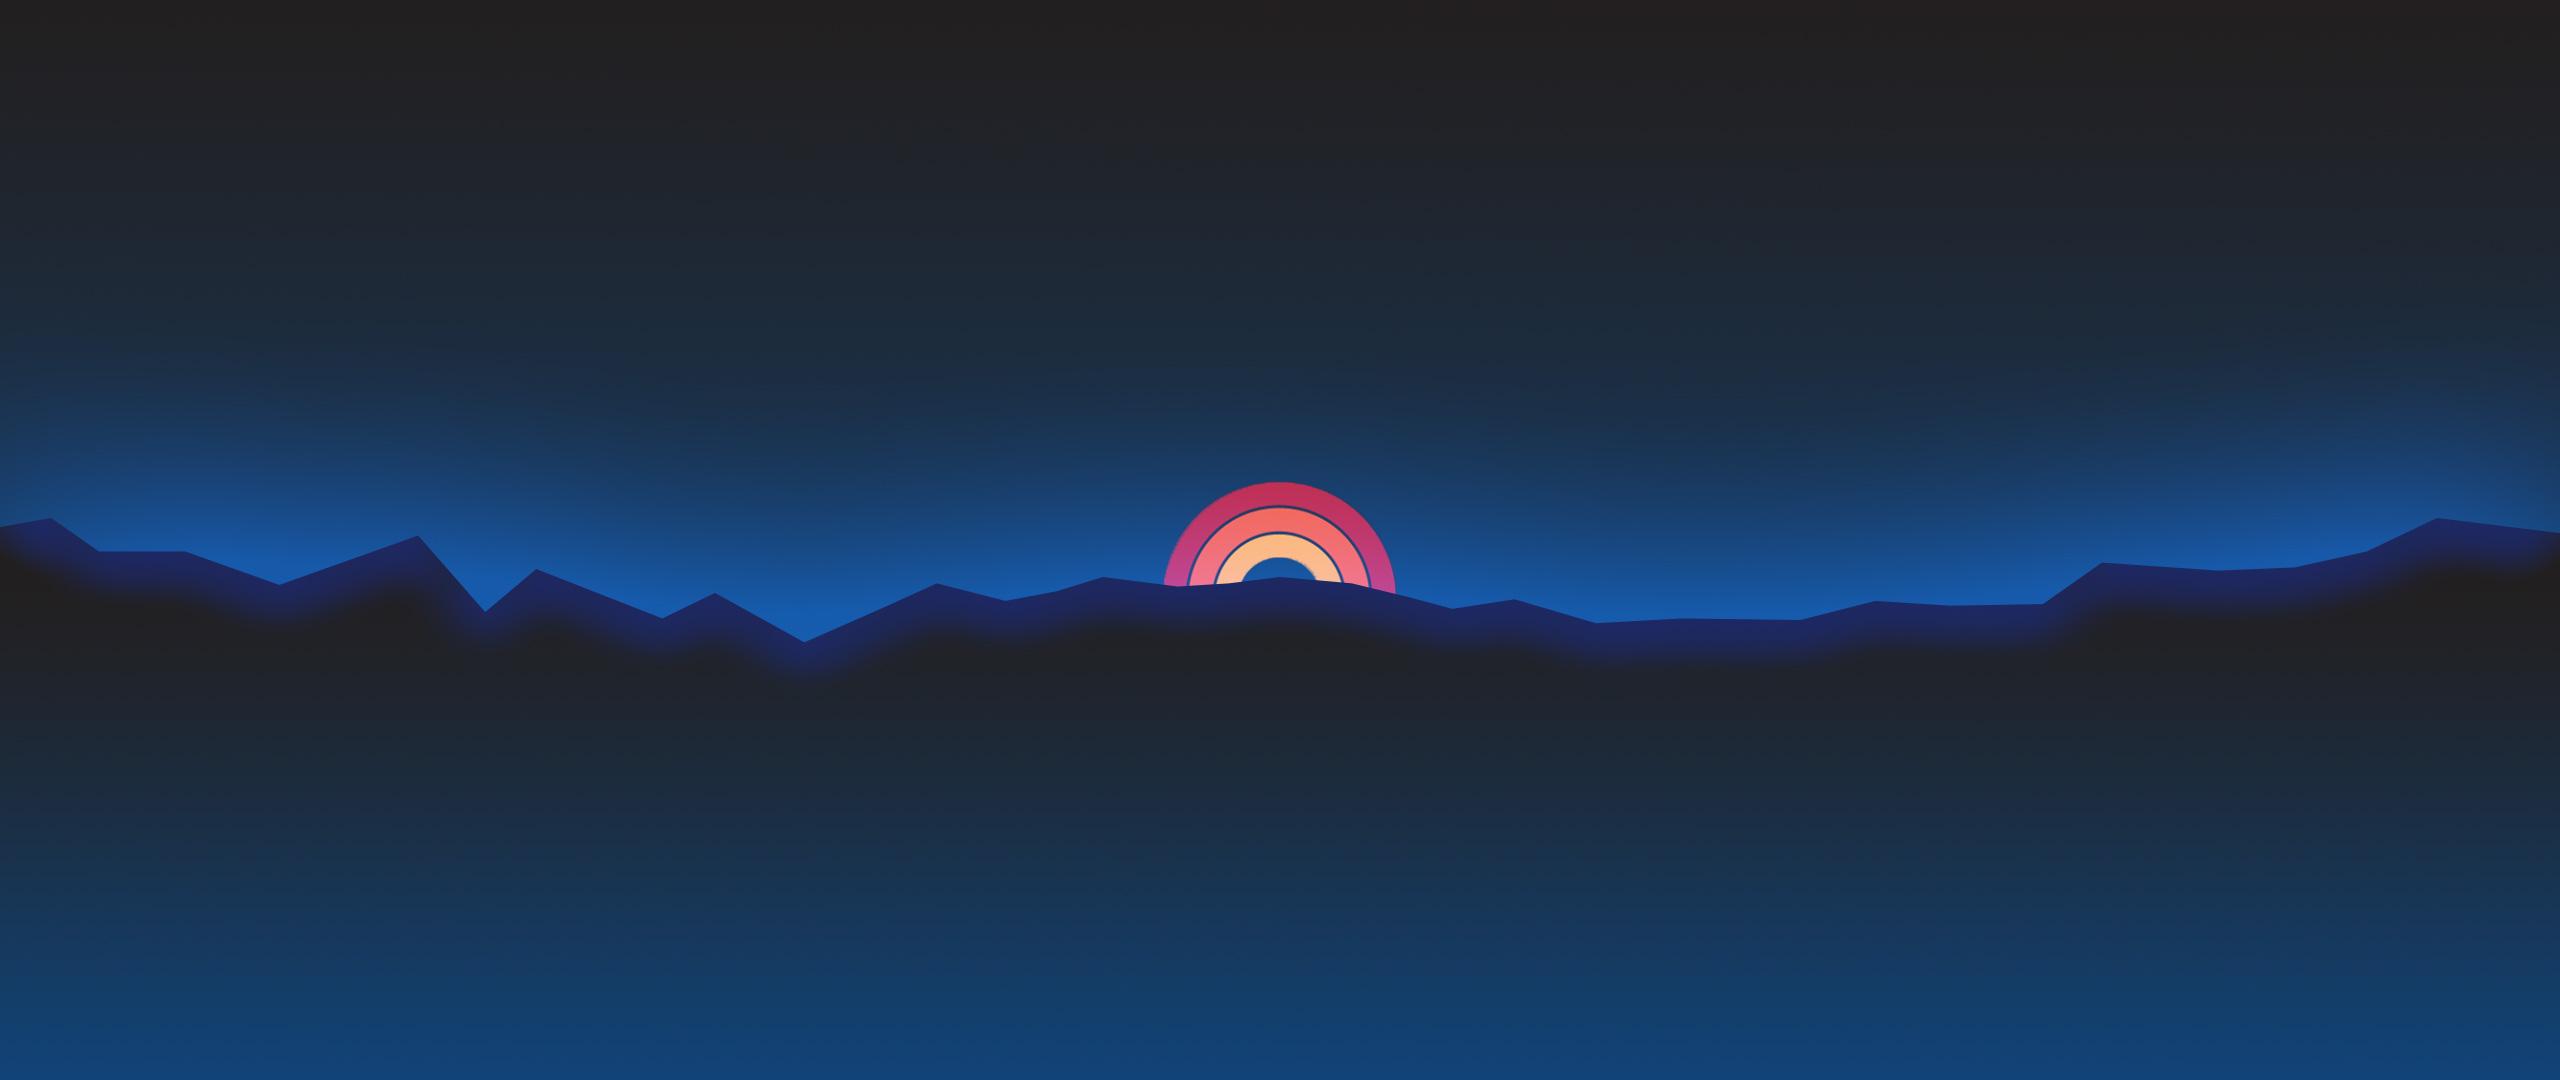 Minimalism Neon Rainbow Sunset Retro Style, HD Artist, 4k